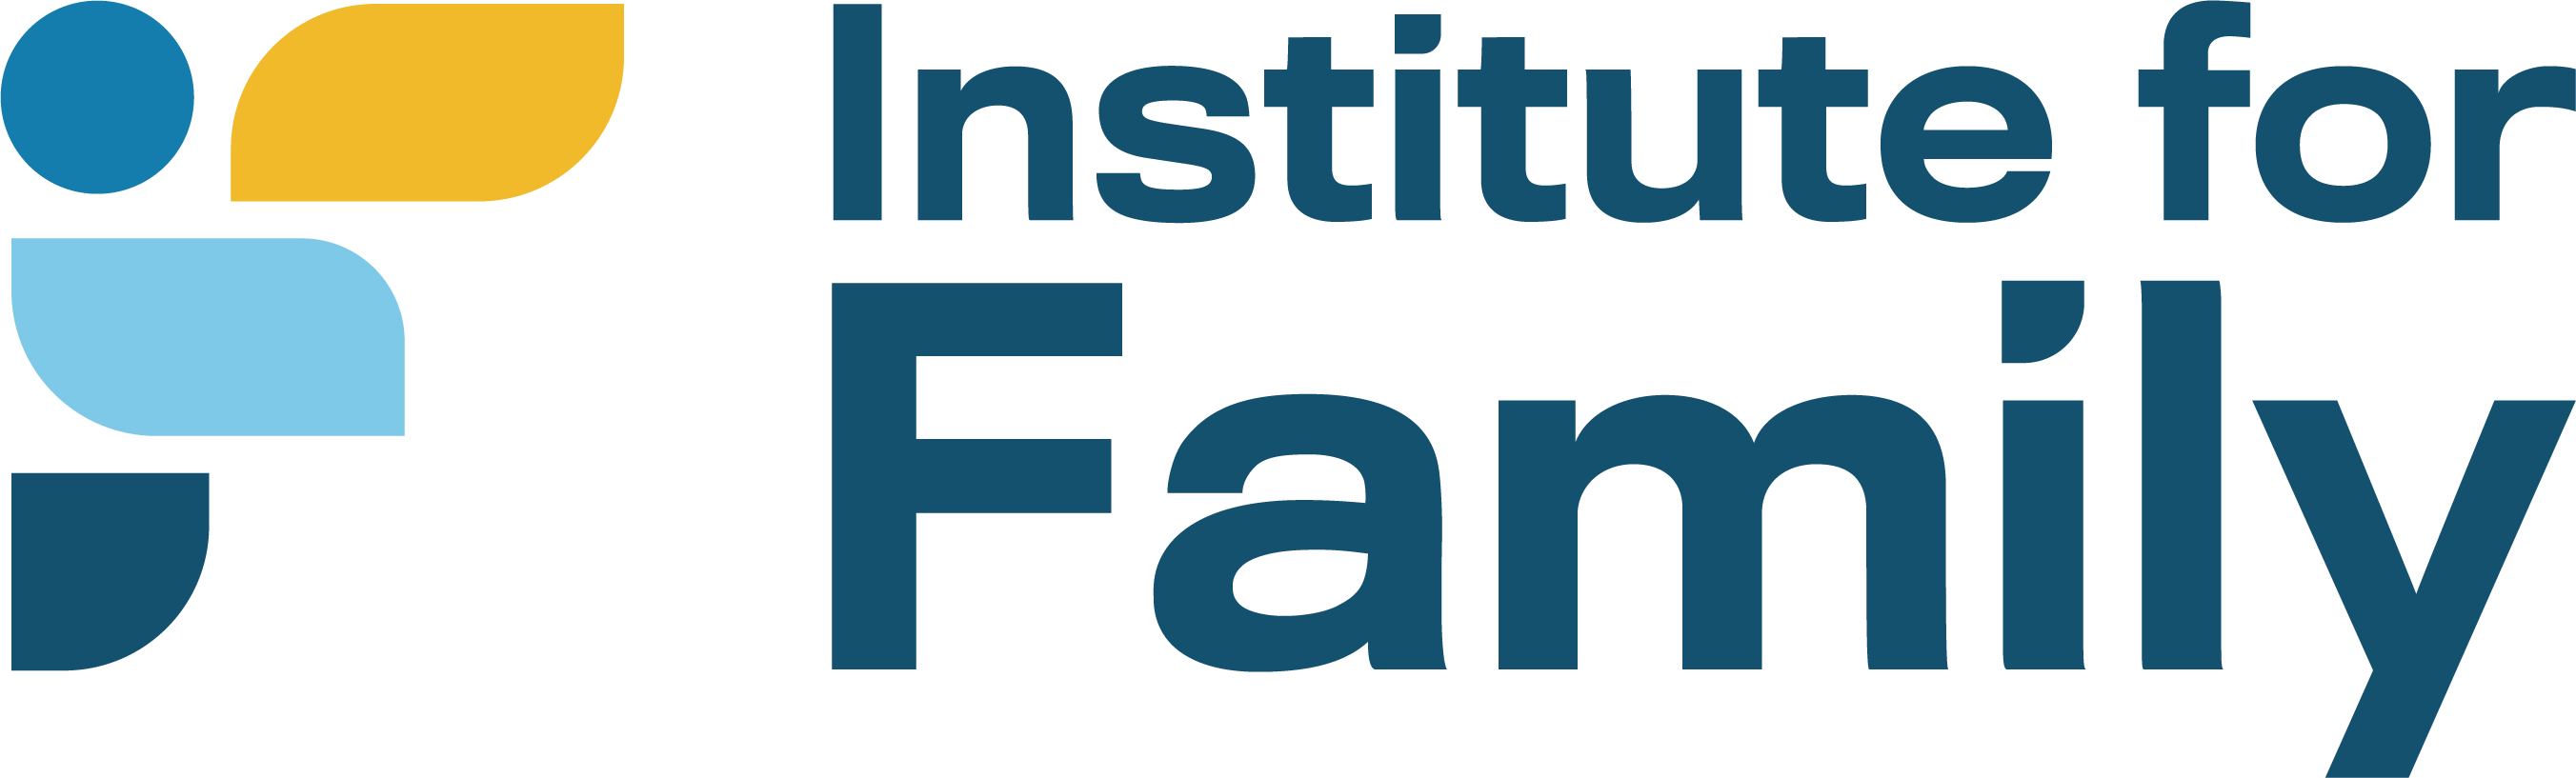 Institute for Family Logo